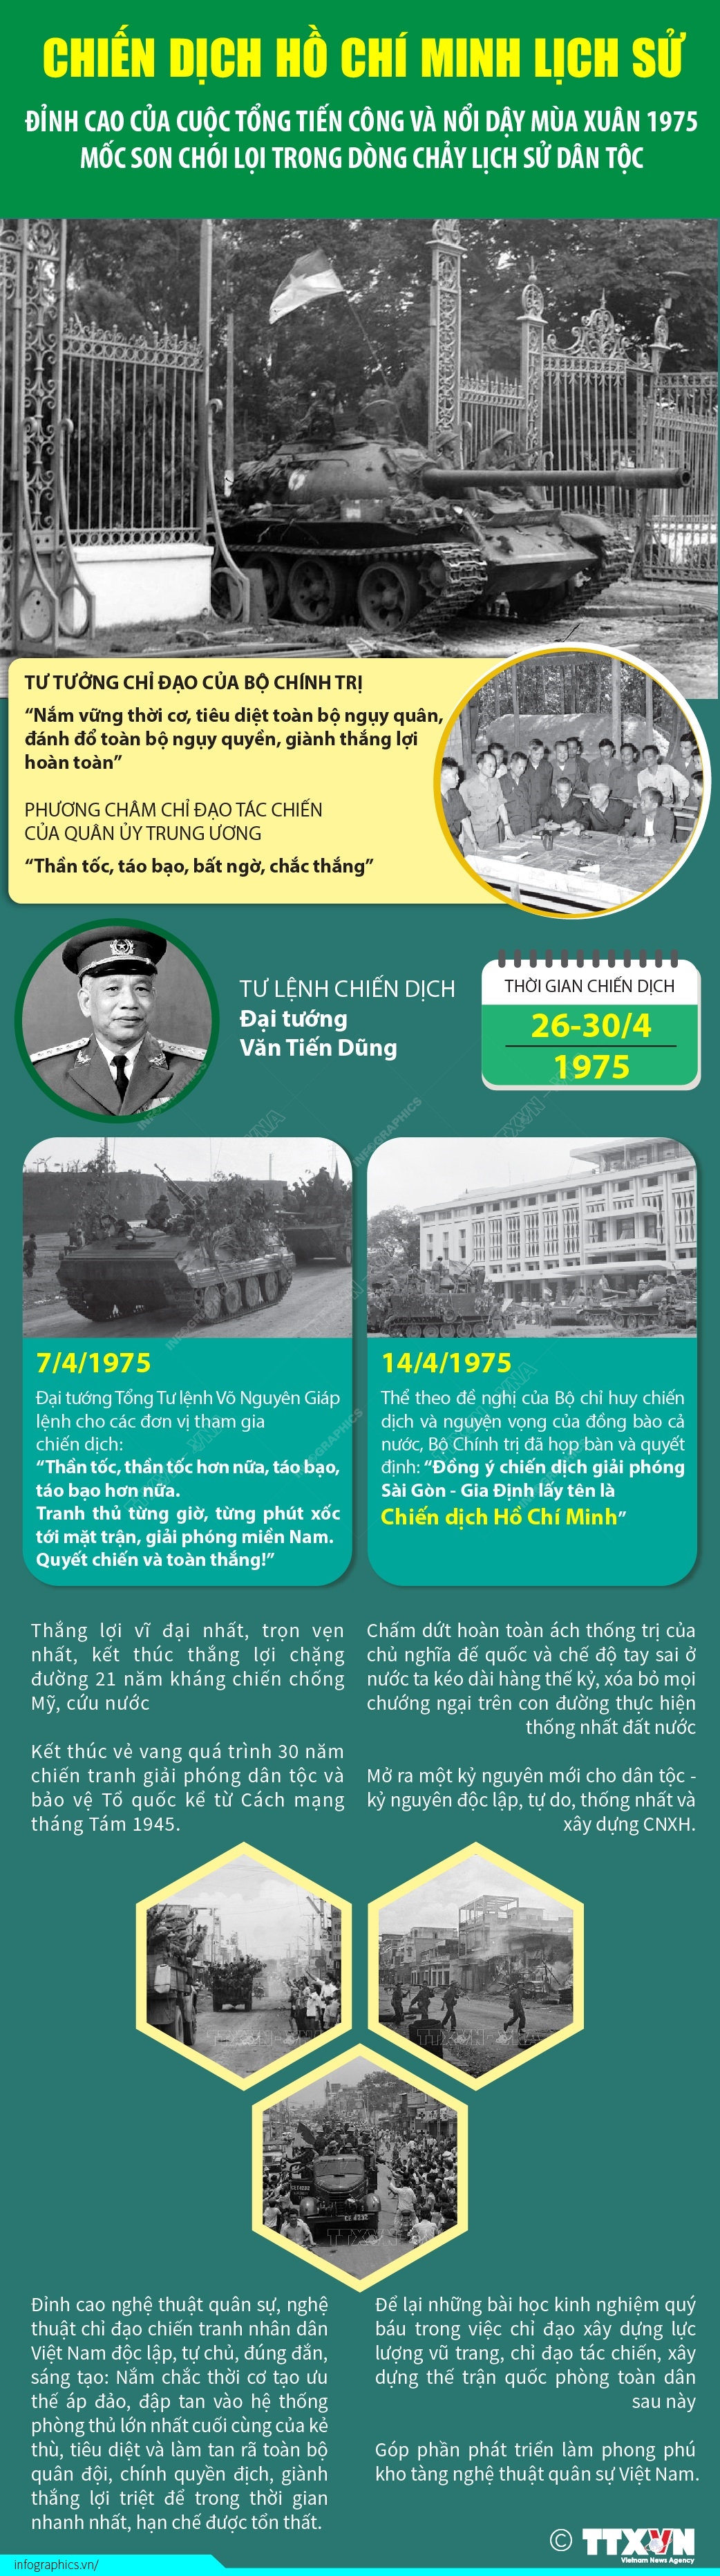 [Infographic] Chiến dịch Hồ Chí Minh lịch sử: Mốc son chói lọi trong dòng chảy lịch sử dân tộc